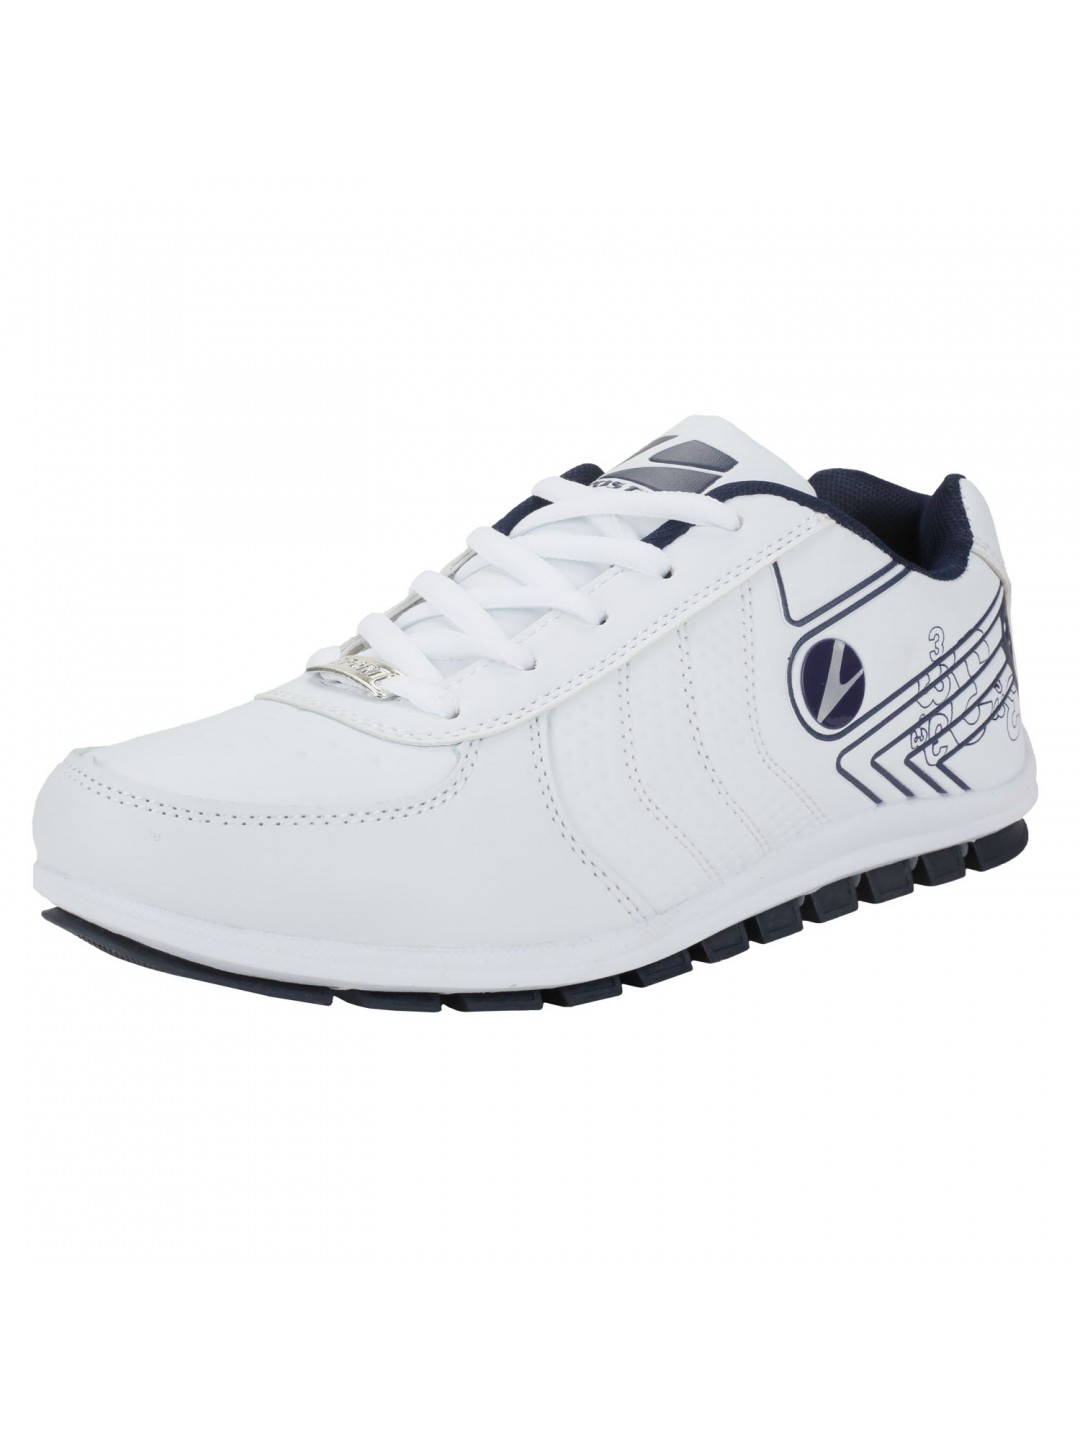 Vostro Rocker White Blue Men Sports Shoes VSS0198